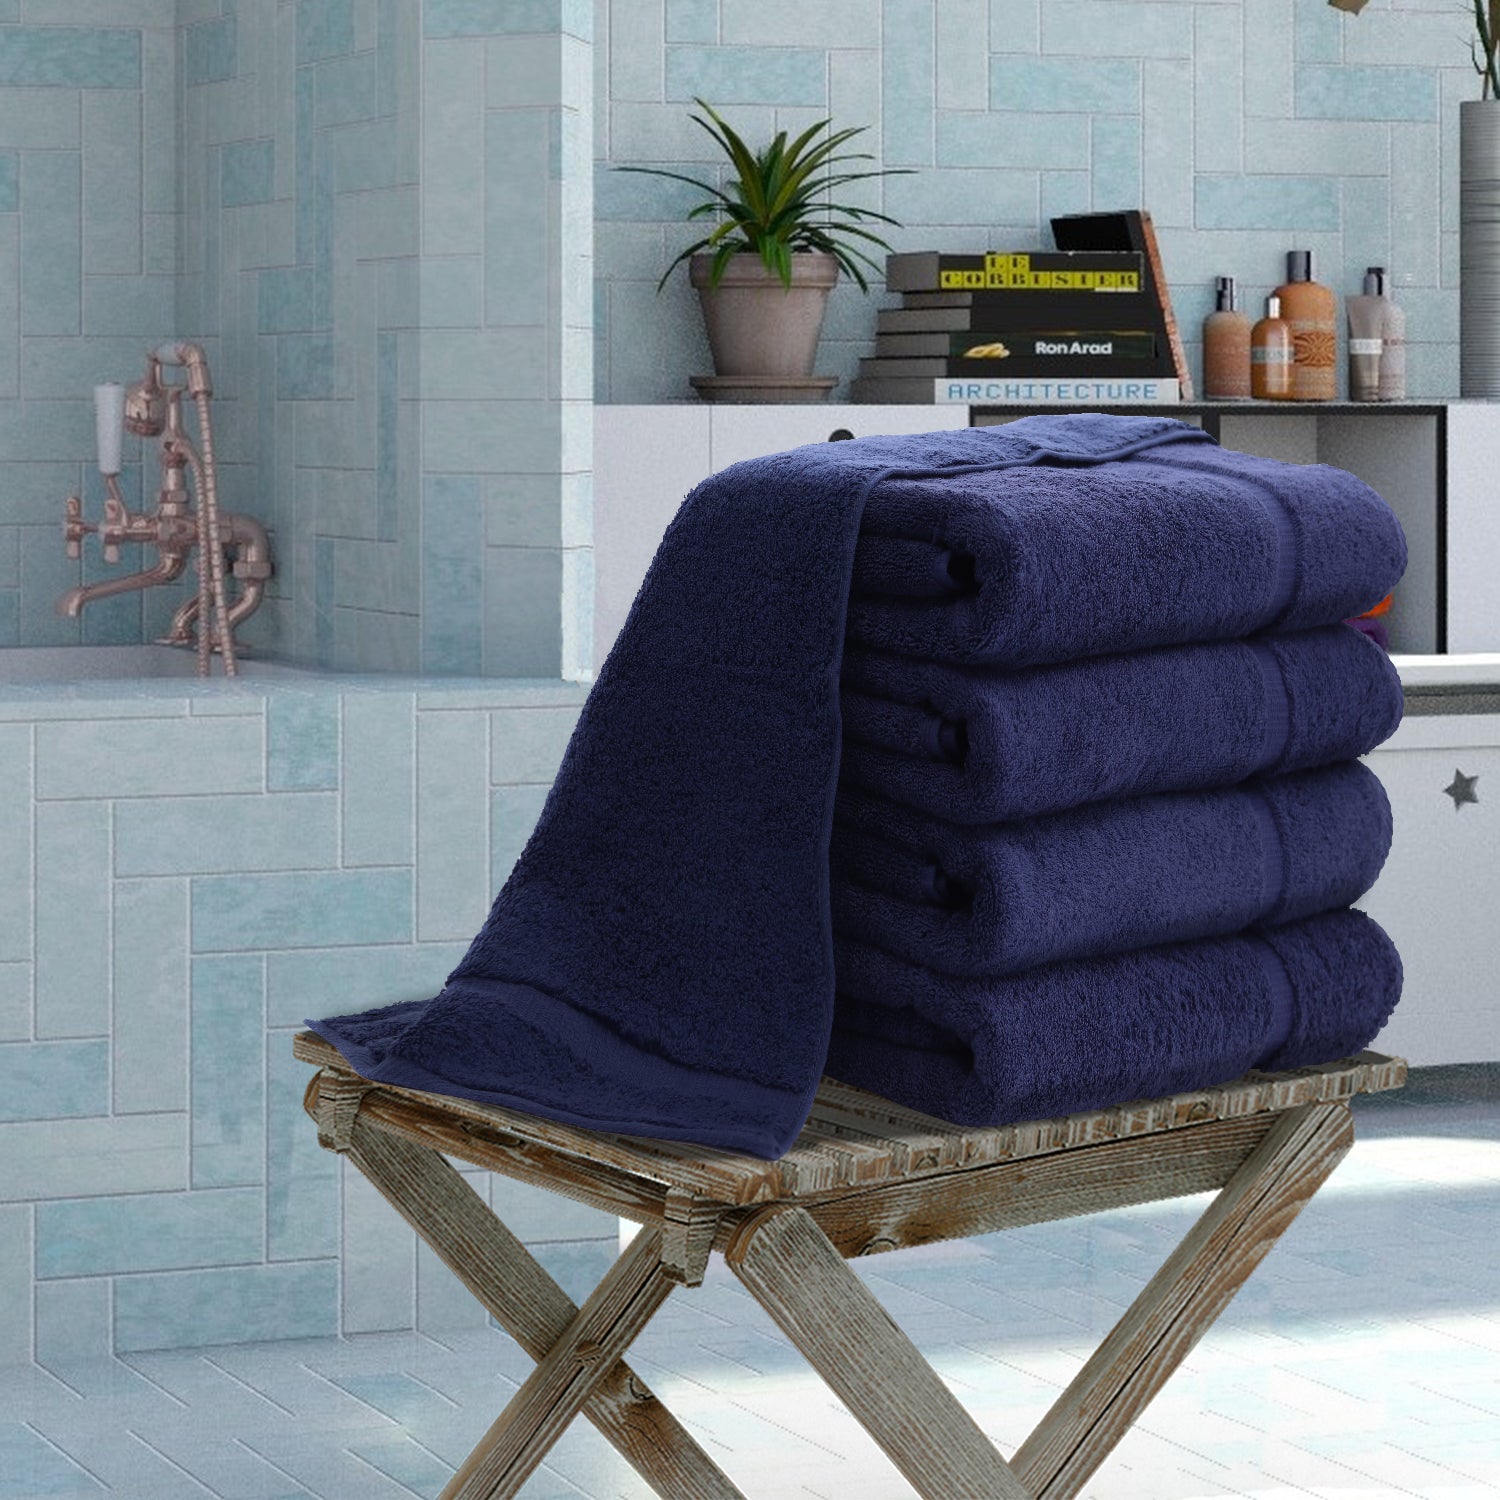 Bath, Towels, Sets - Maui Luxury Hotel Resort Bath Towels